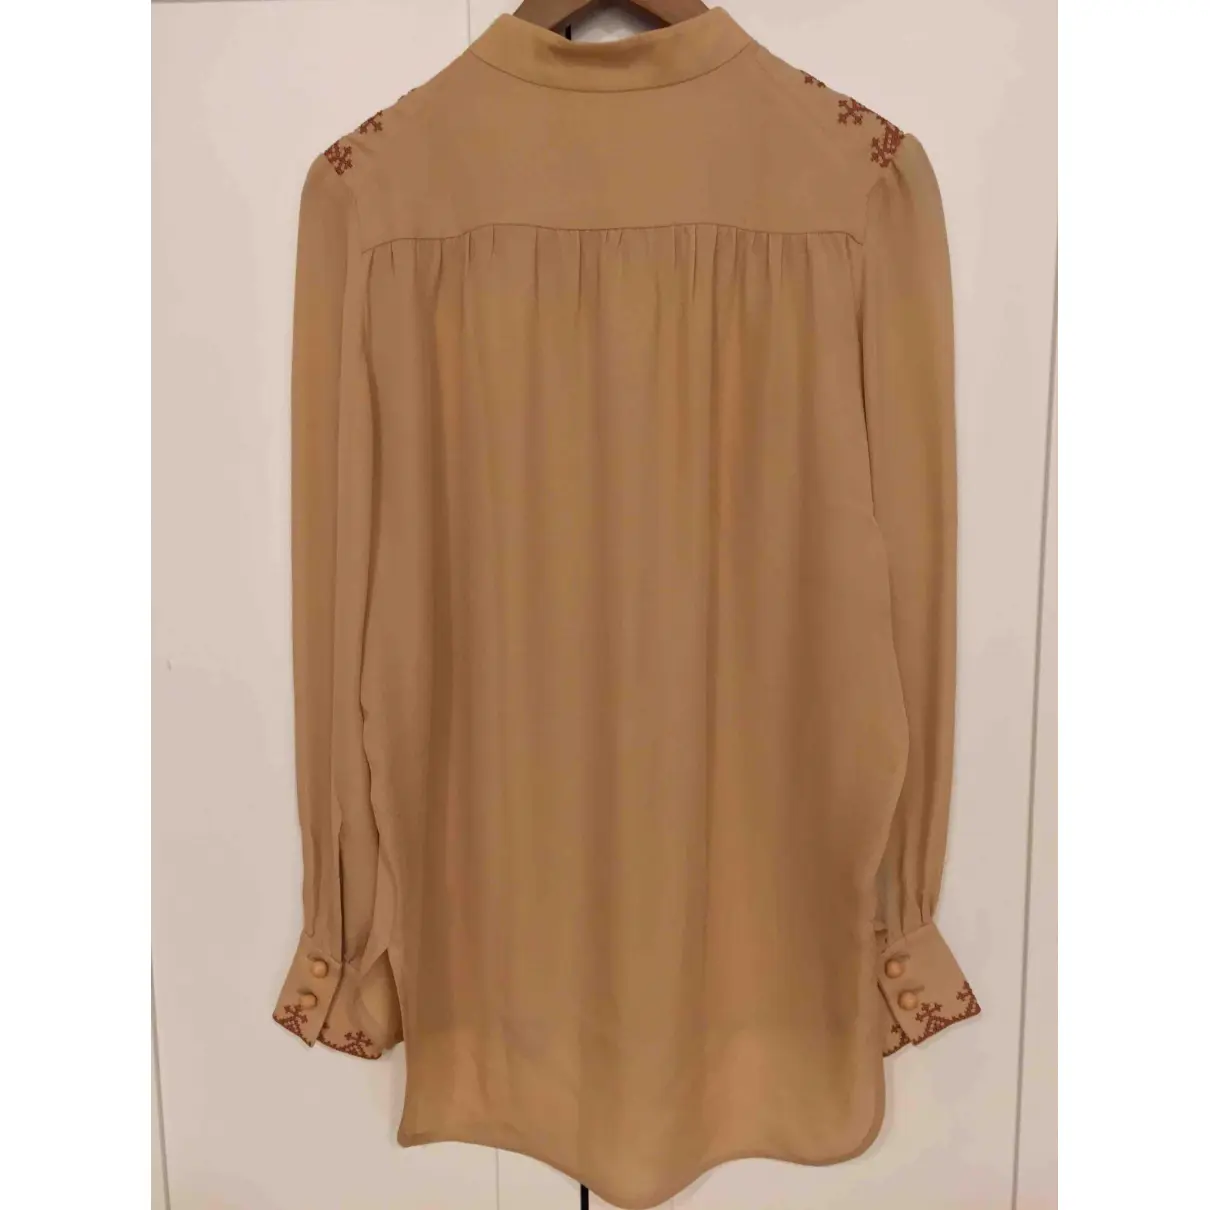 Buy Vilshenko Silk blouse online